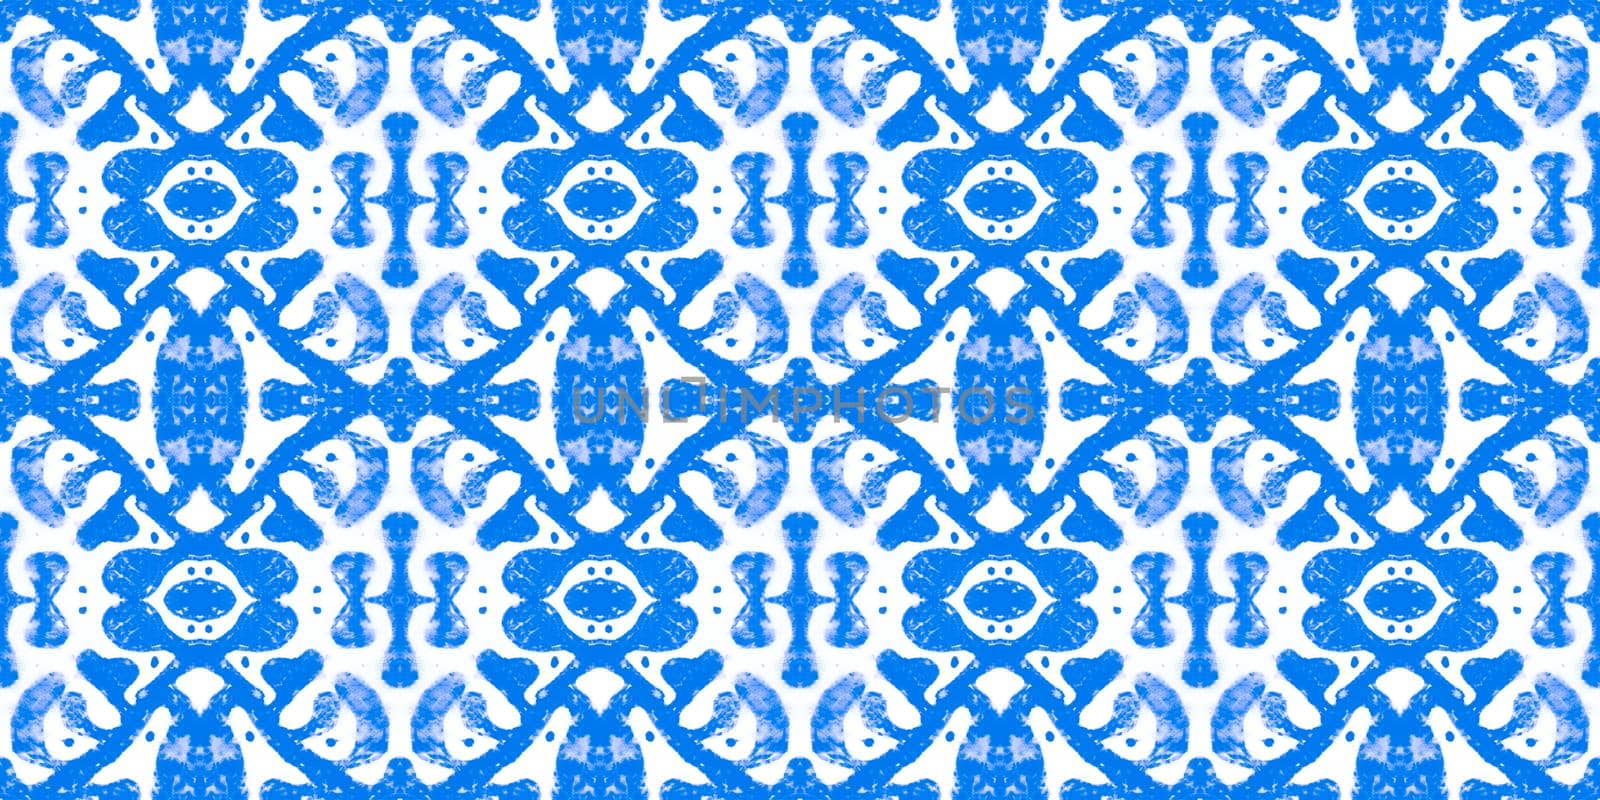 Italian majolica tile. Arabesque oriental wallpaper. Abstract vintage portuguese design. Watercolor majolica. Seamless talavera ceramic. Floral azulejo mosaic. Majolica ornament.